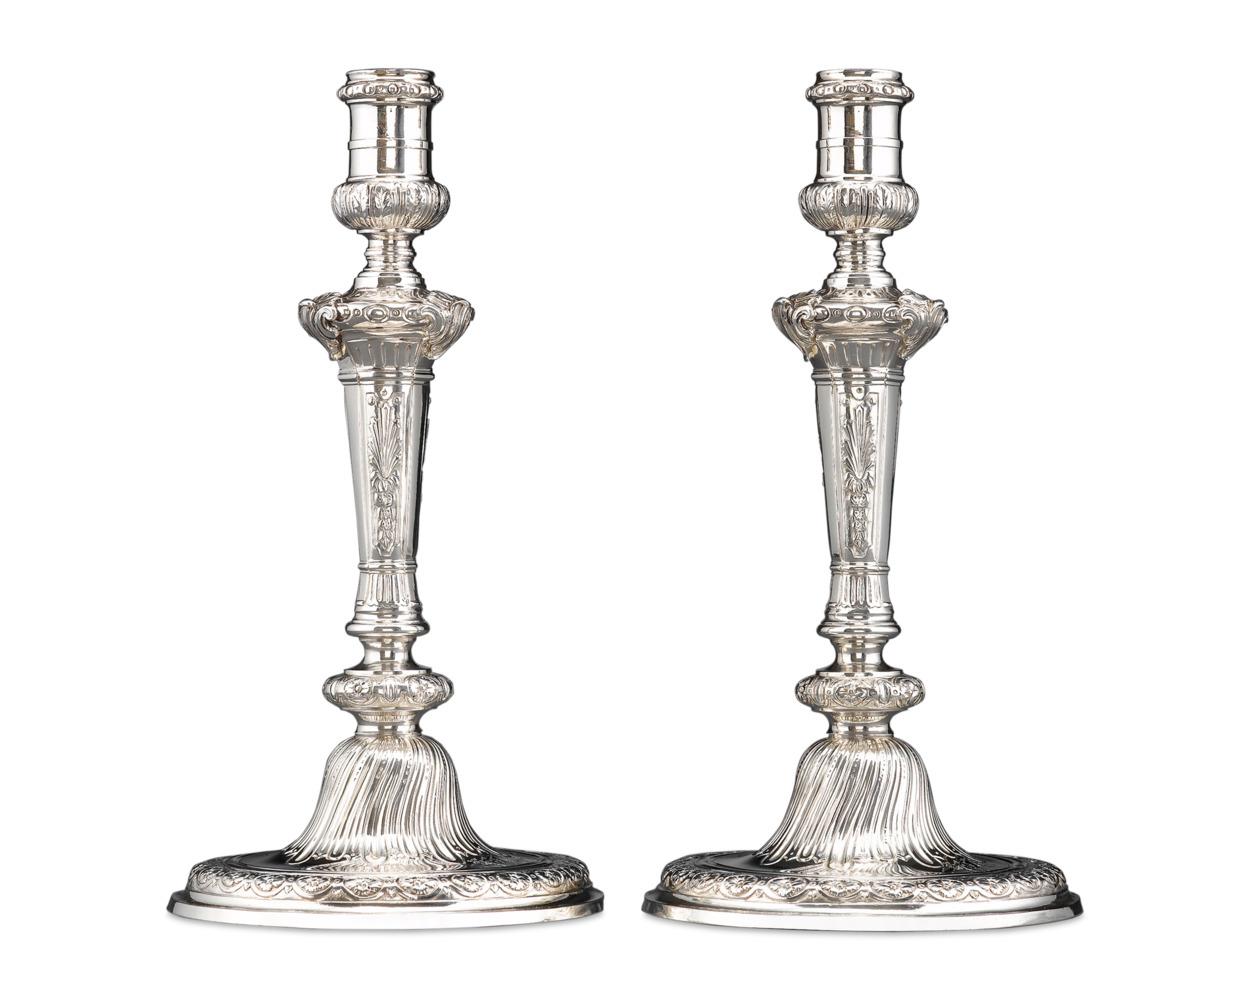 Ein herausragendes Paar Kerzenhalter aus Sterlingsilber des englischen Silberschmieds Alexander Johnston. Diese Kerzenständer spiegeln die georgische Vorliebe für den Rokoko-Stil in der Mitte des 18. Jahrhunderts wider und weisen tief ziselierte